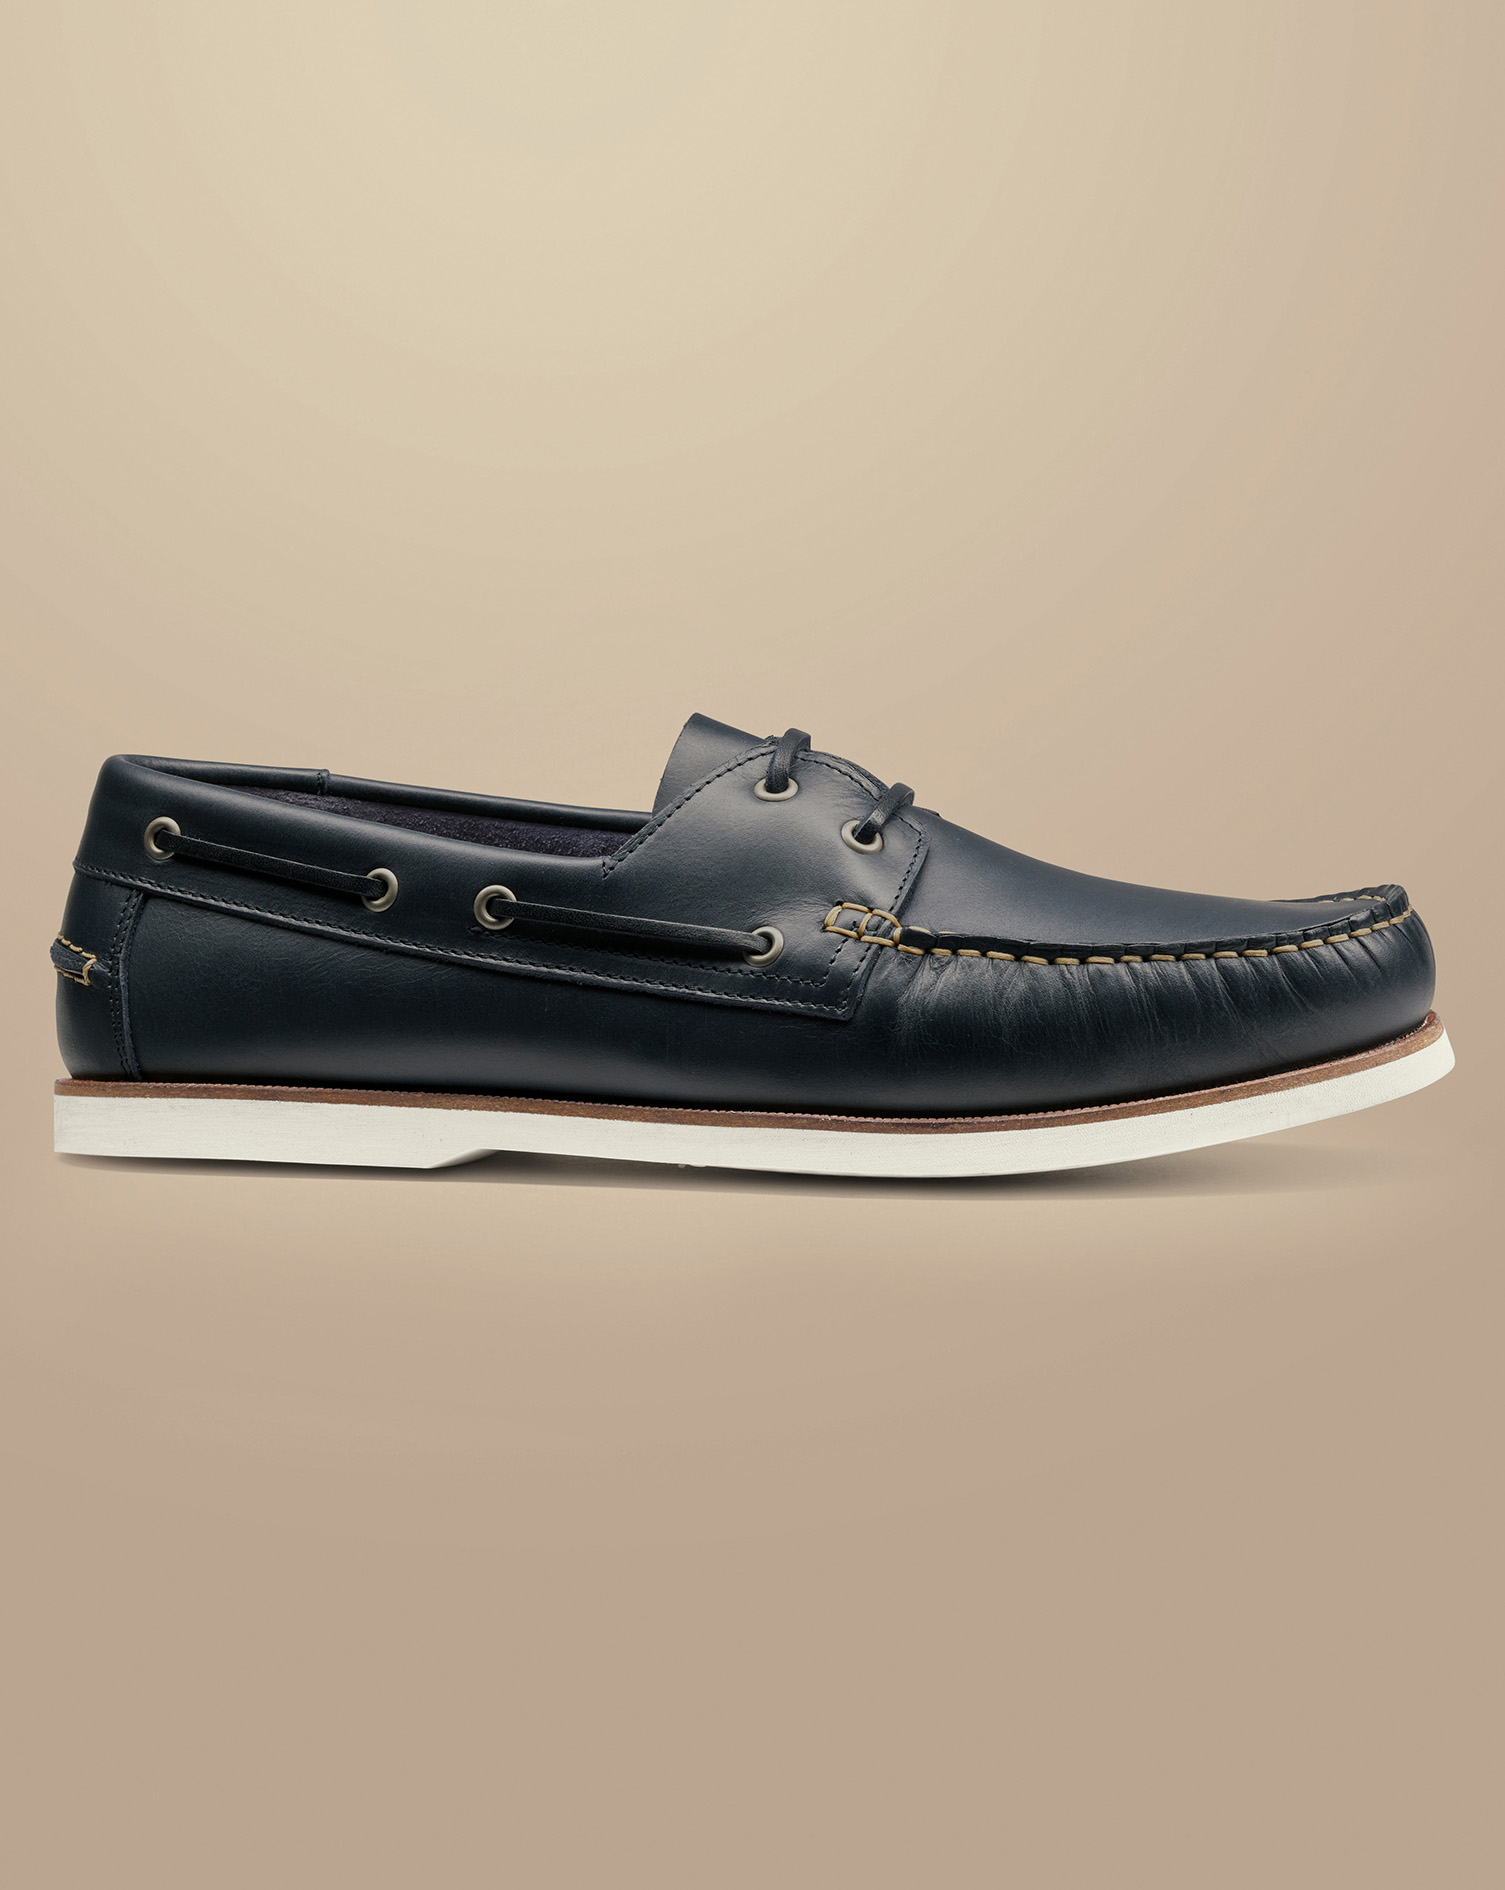 Men's Charles Tyrwhitt Leather Boat Shoe - Dark Navy Blue Size 10
